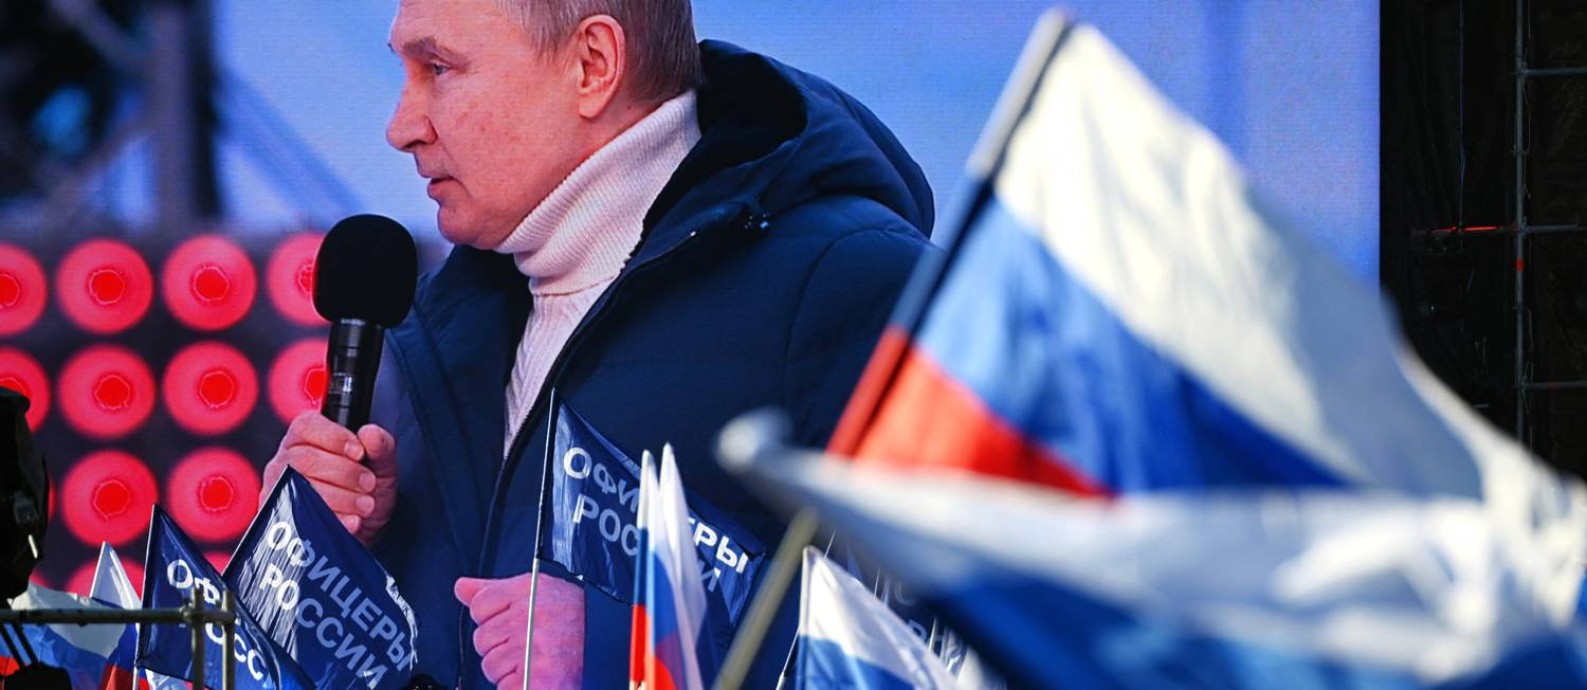 O presidente russo, Vladimir Putin, exalta 'operação especial' na Ucrânia diante de estádio lotado em Moscou Foto: HOST PHOTO AGENCY / via REUTERS